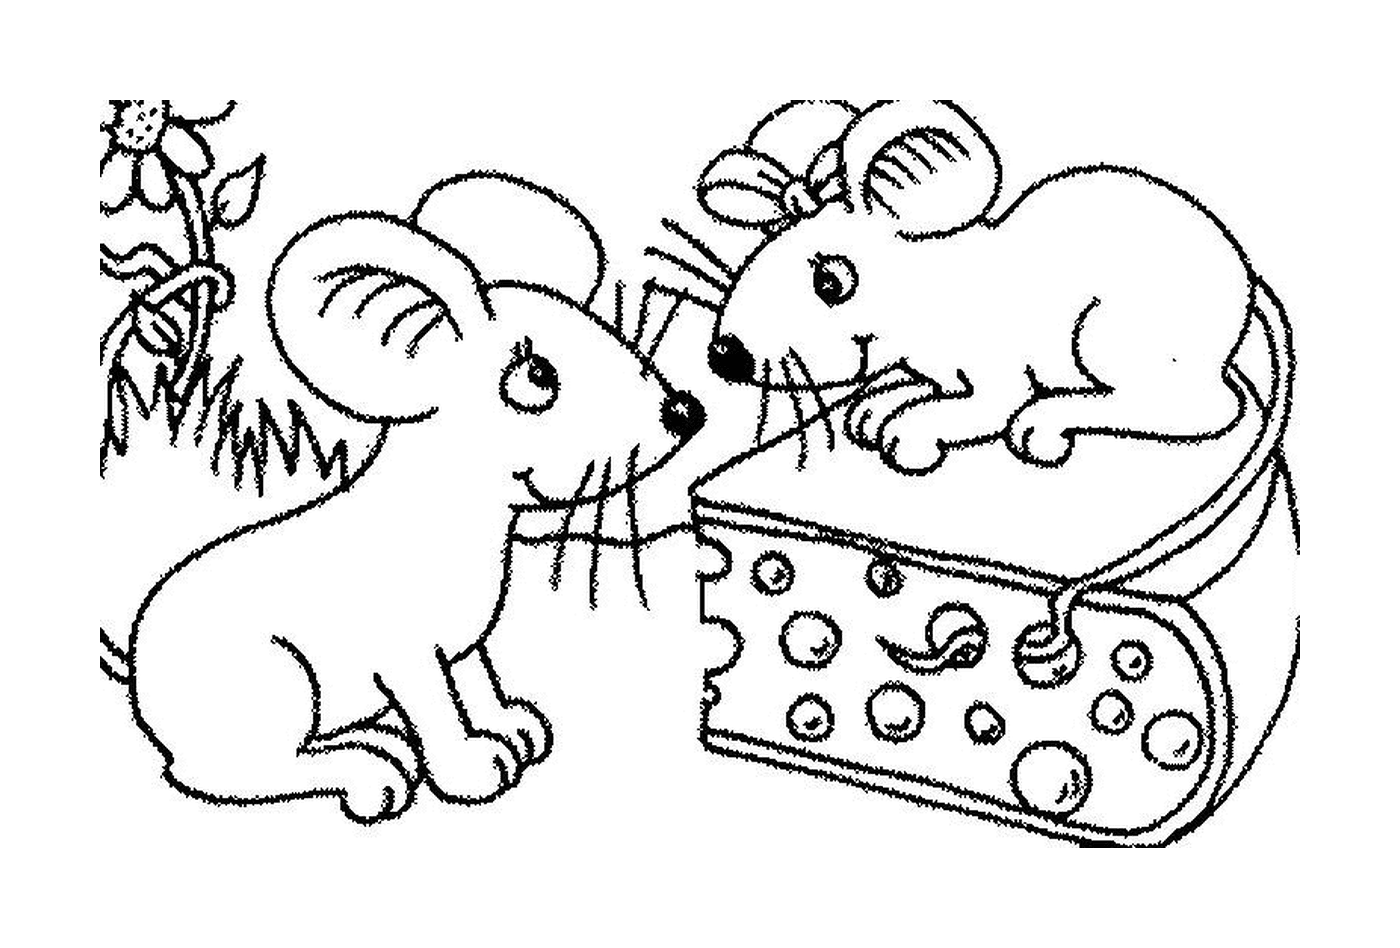  Две мыши и кусок сыра 